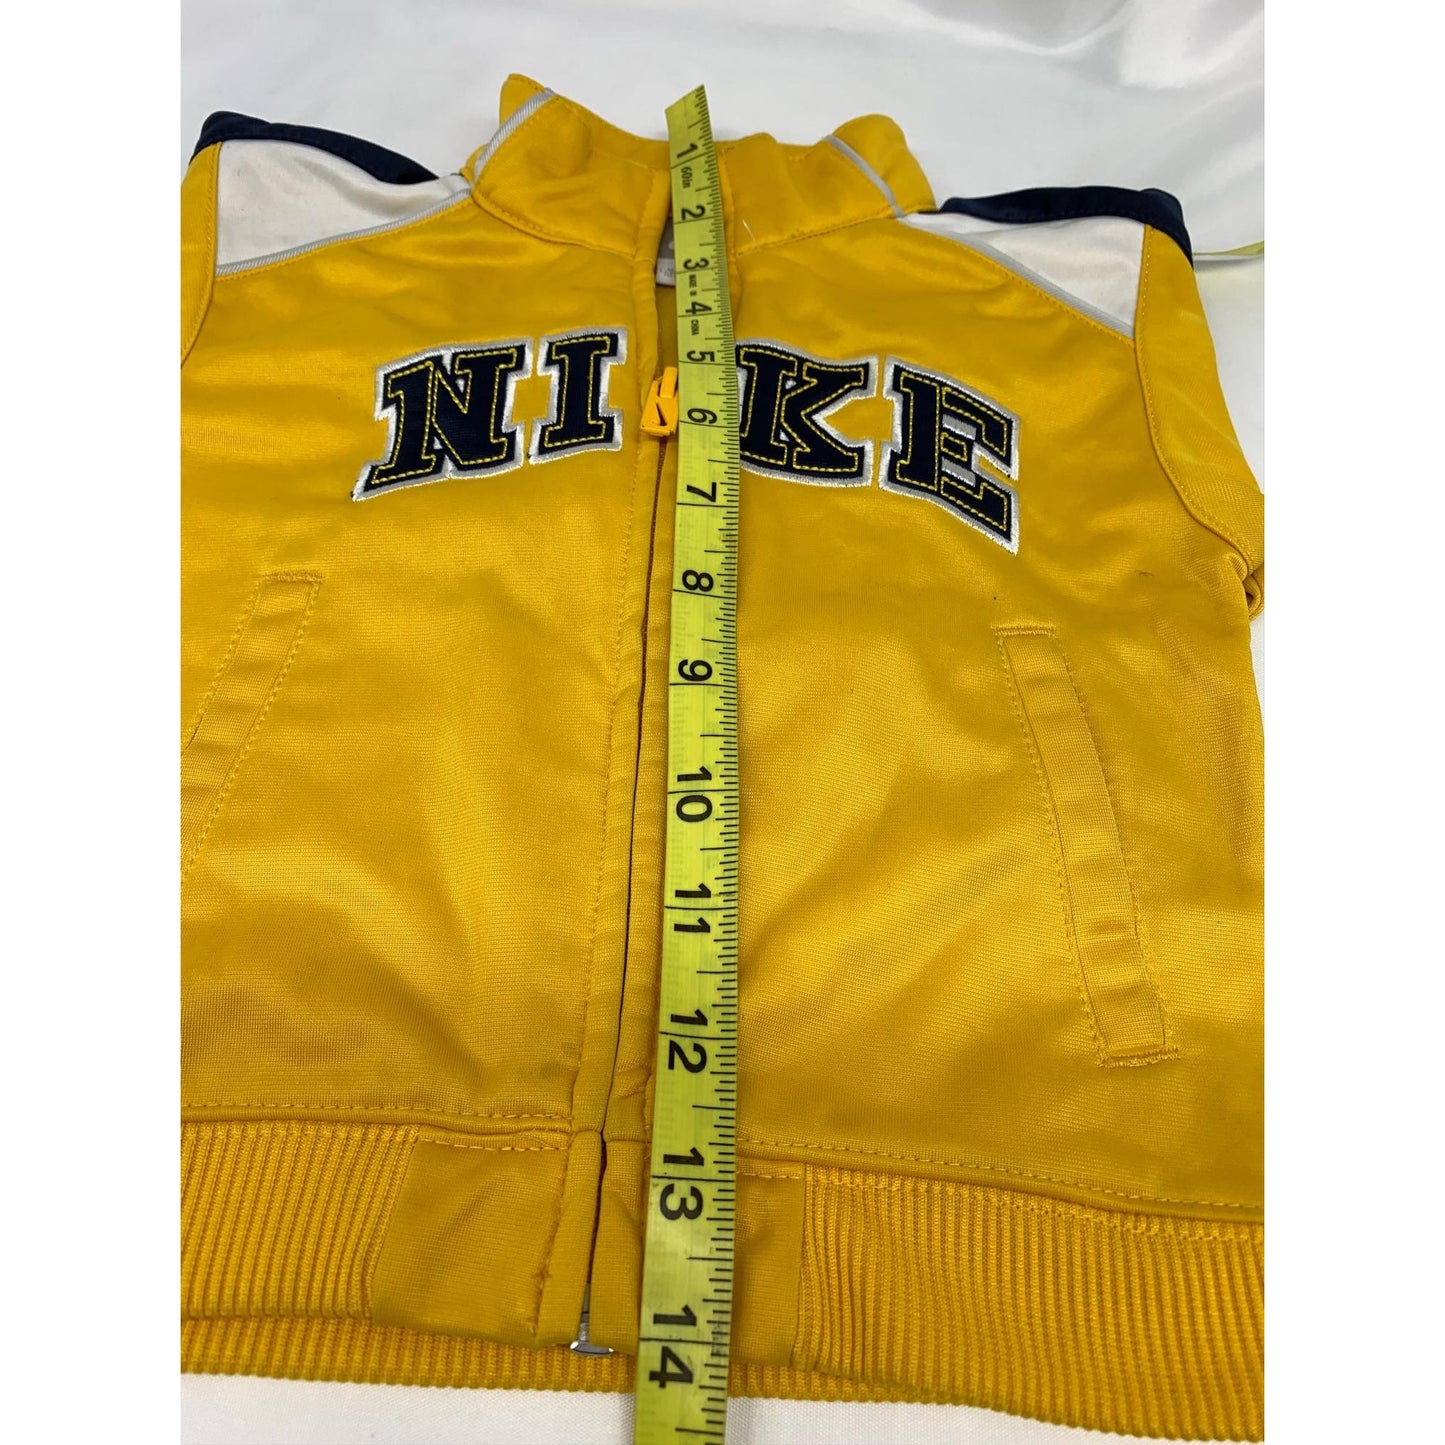 Nike infant Jacket size 12M